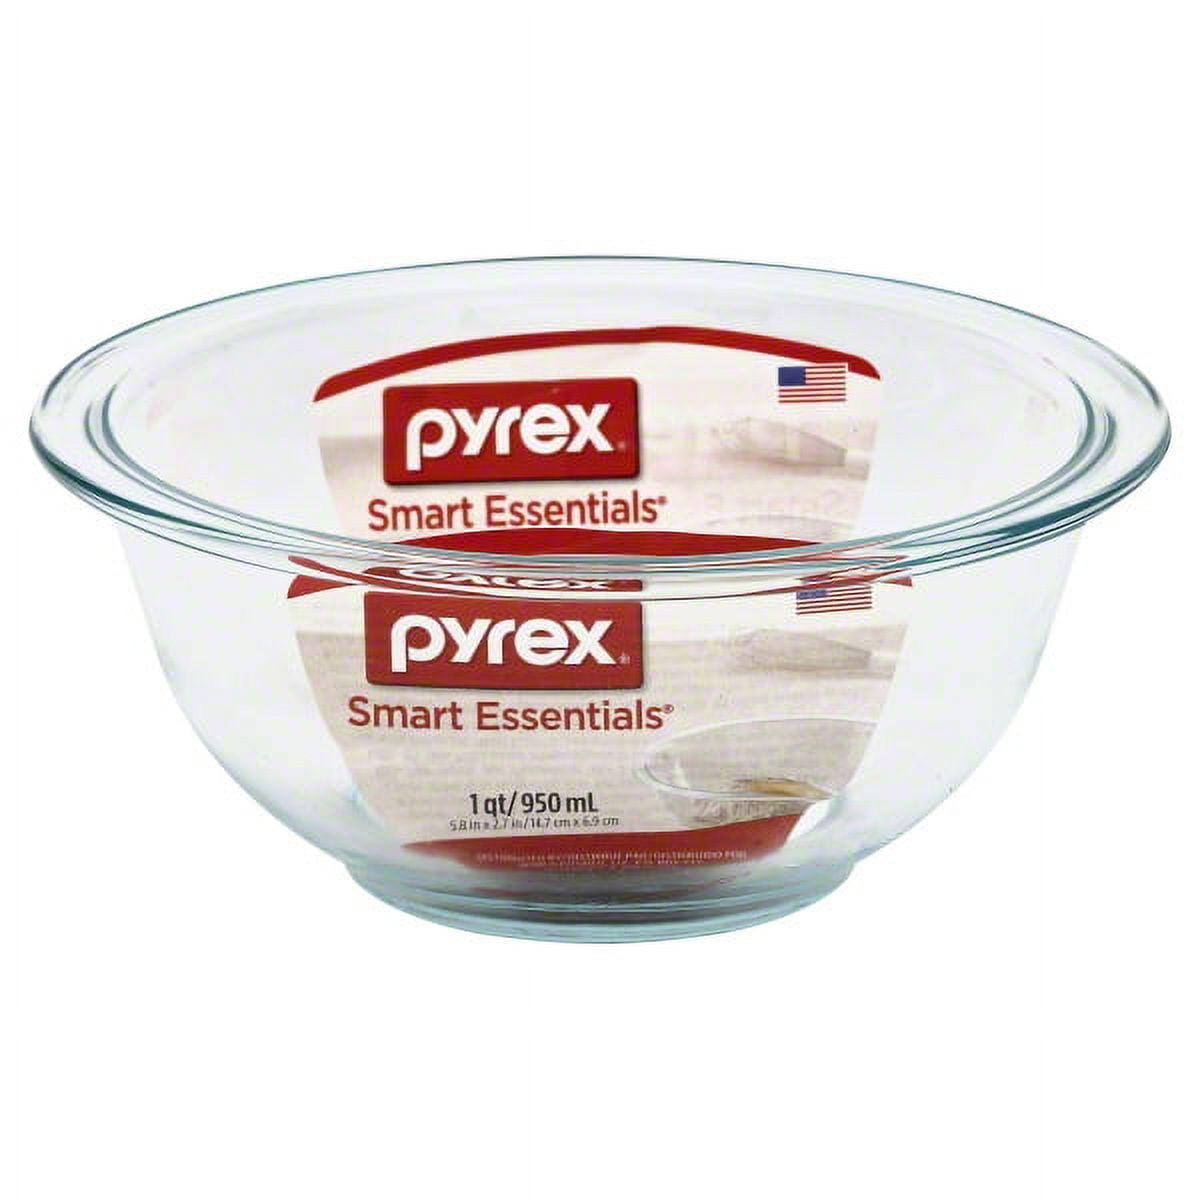 Pyrex 4 Qt Mixing Bowl With Pour Spout